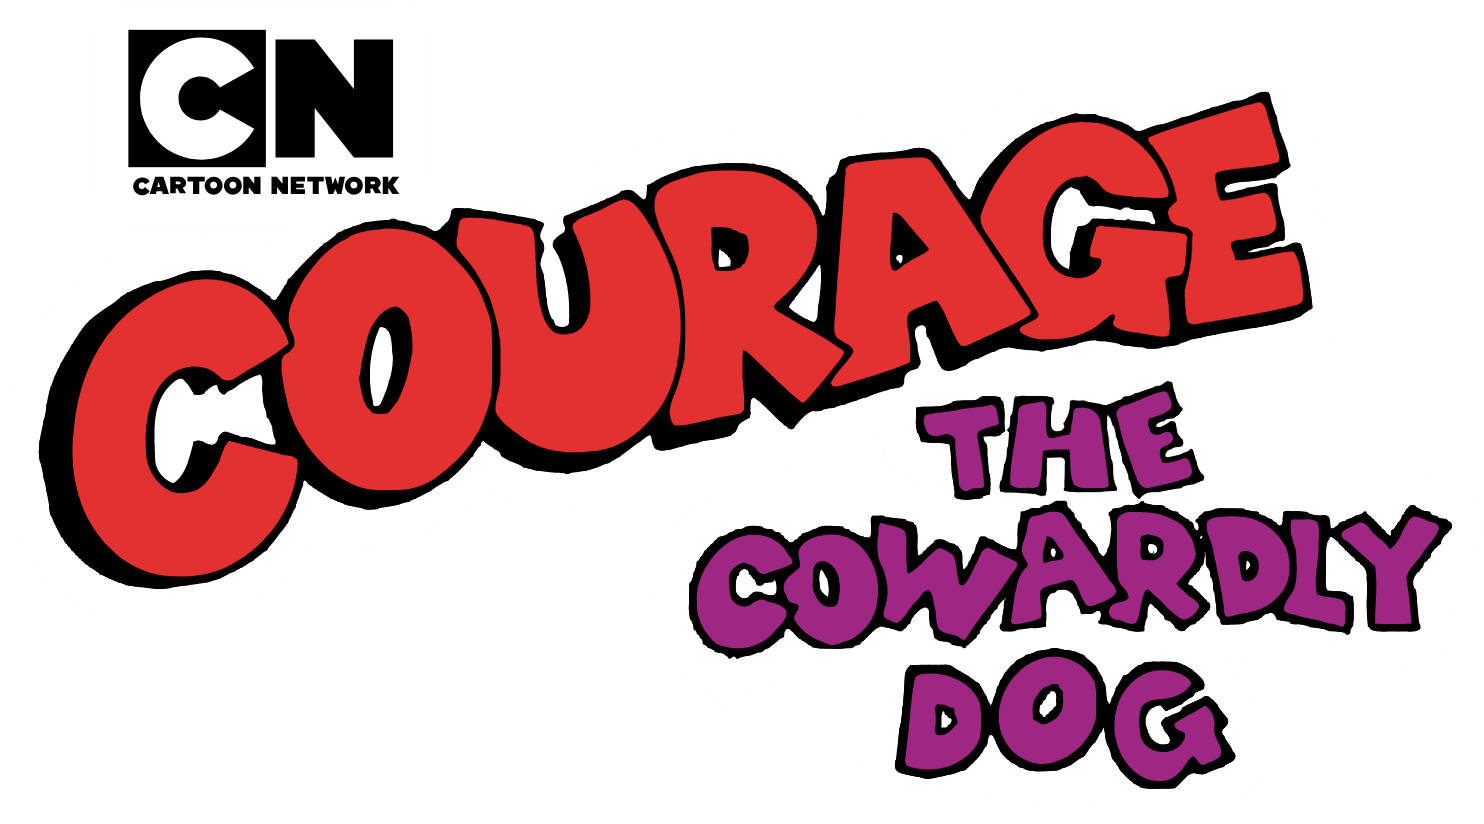 Courage der feige Hund Cartoon Network Wiki Fandom